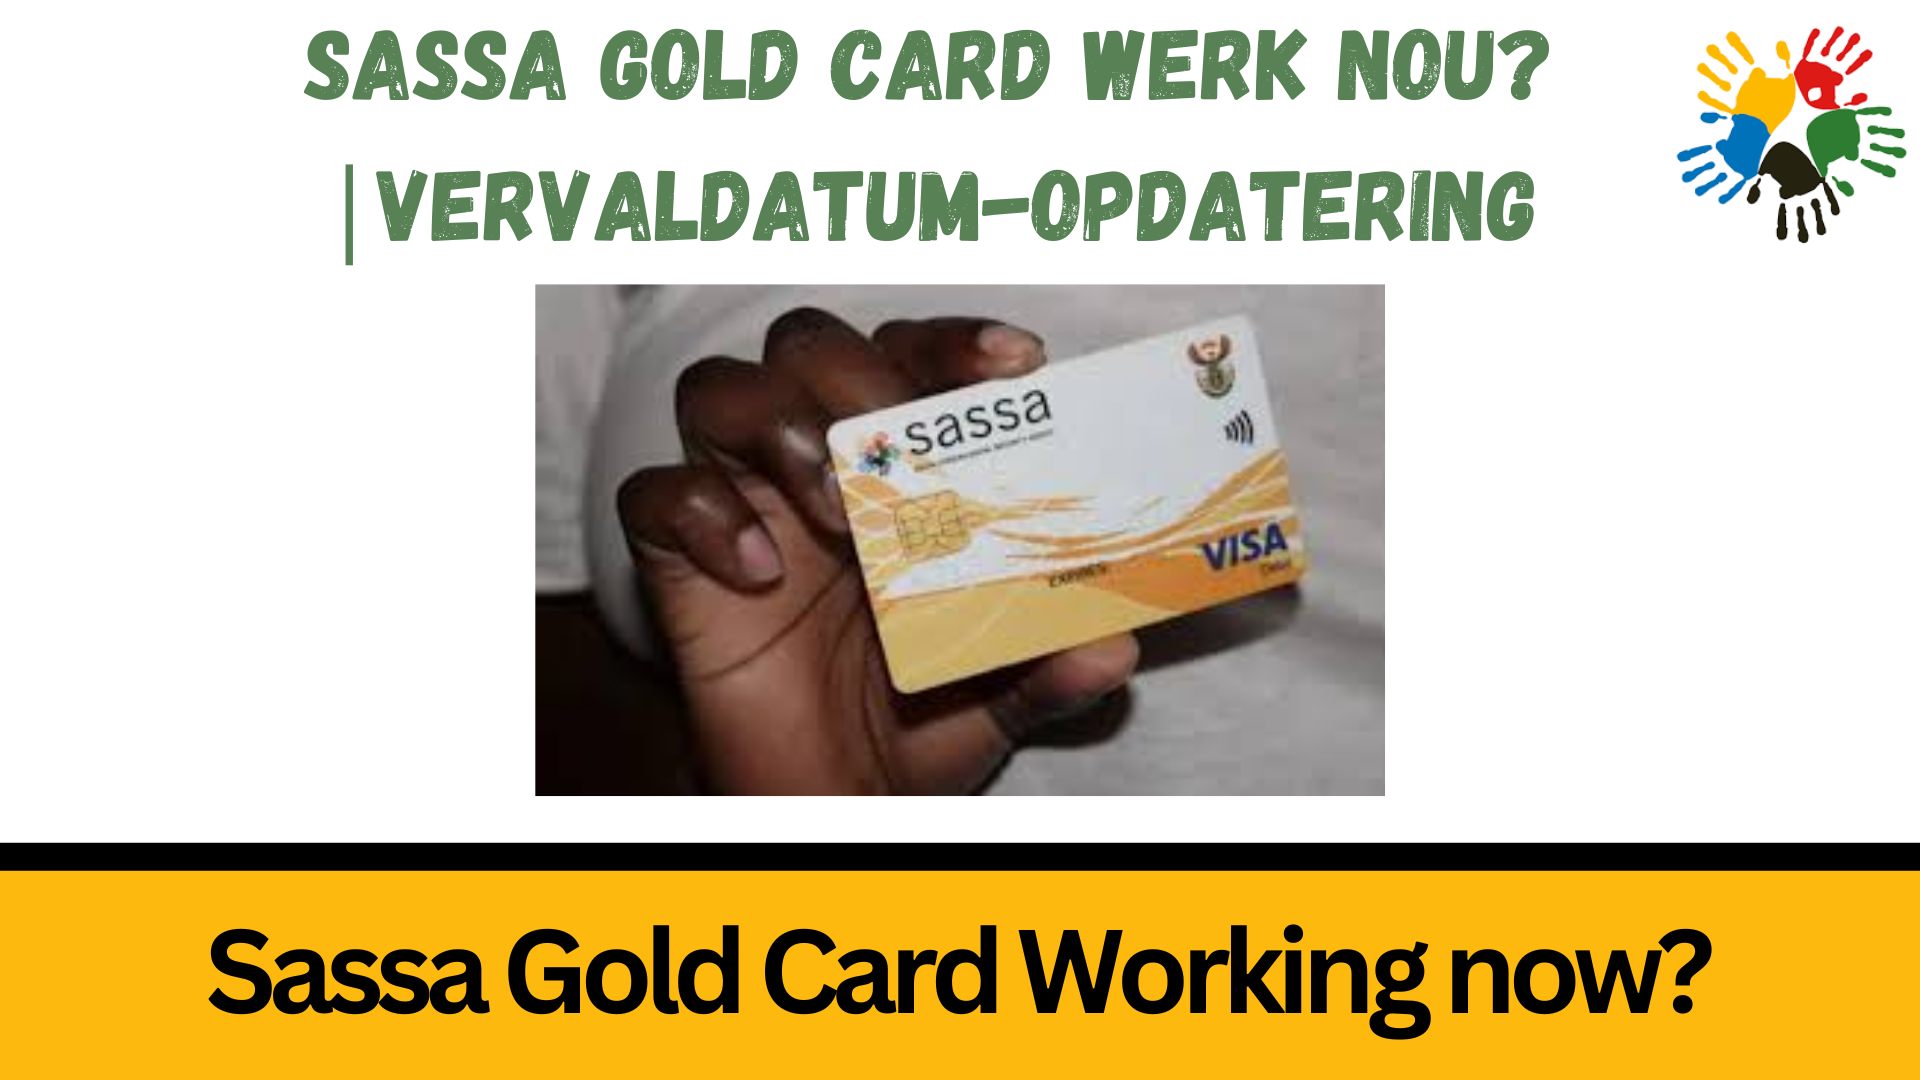 Sassa Gold Card Working Now?